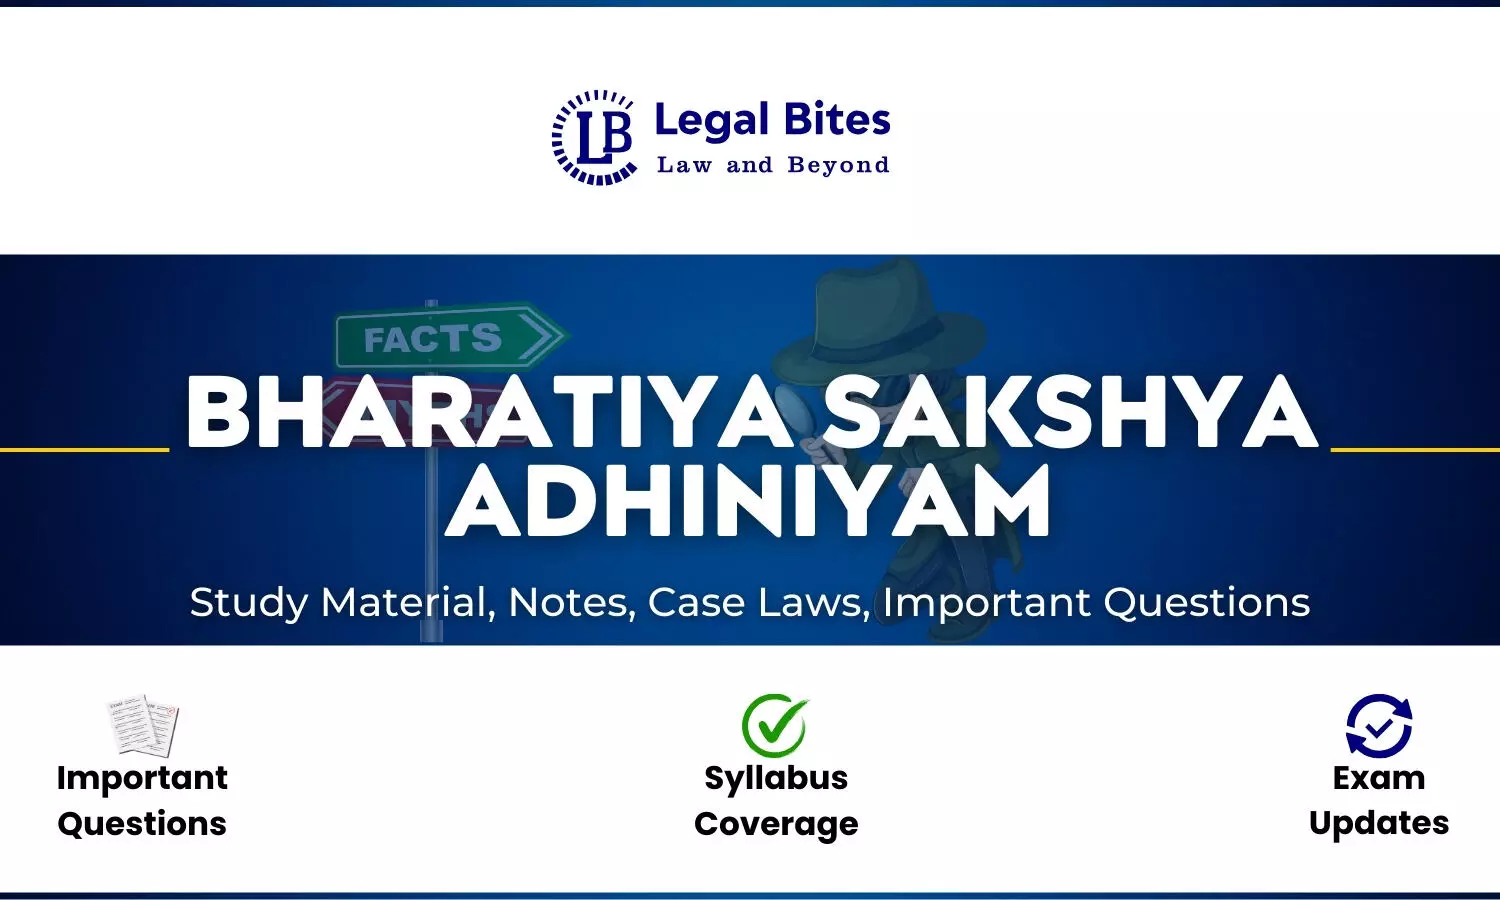 Bharatiya Sakshya Adhiniyam (BSA) - Notes, Case Laws And Study Material